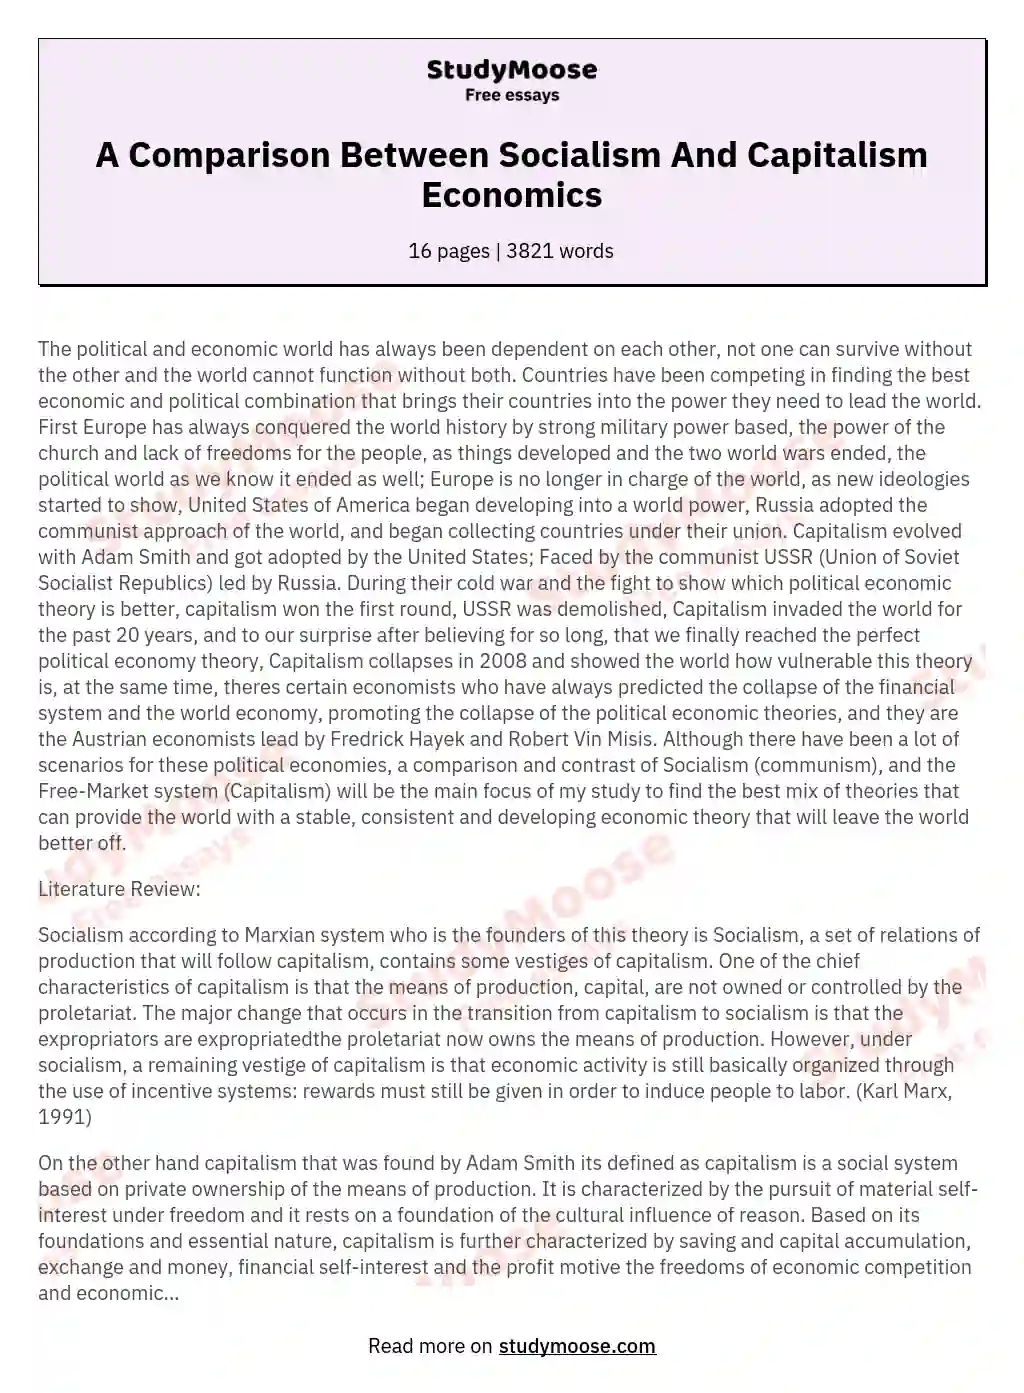 A Comparison Between Socialism And Capitalism Economics essay